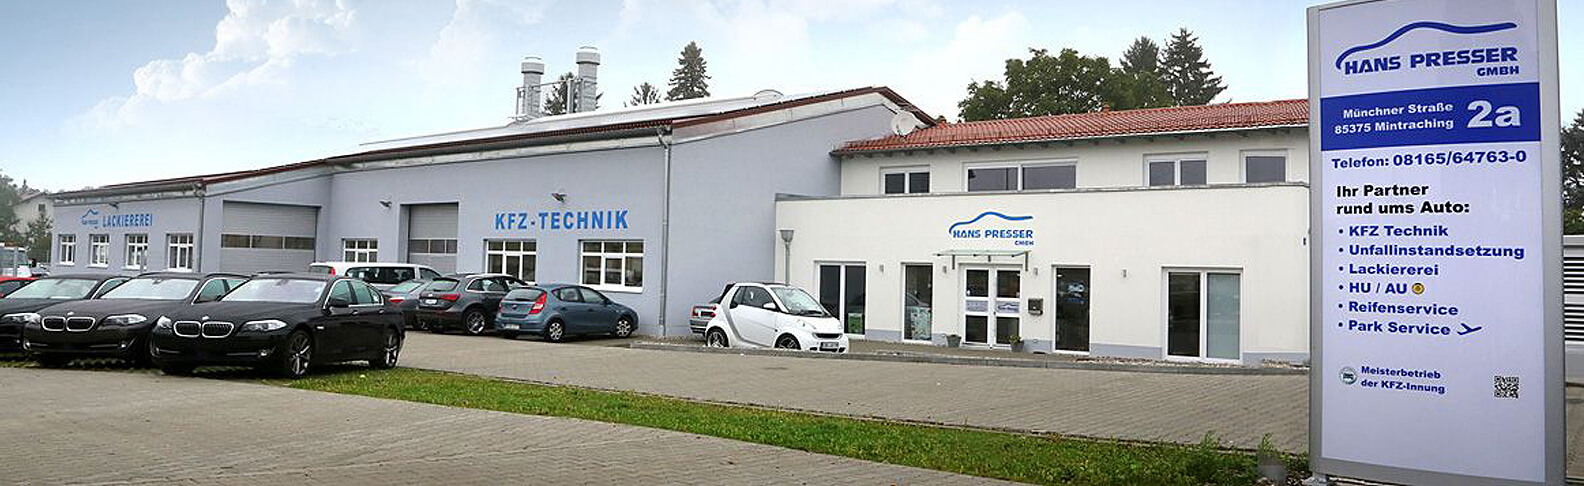 Hans Presser GmbH - Firmengelände